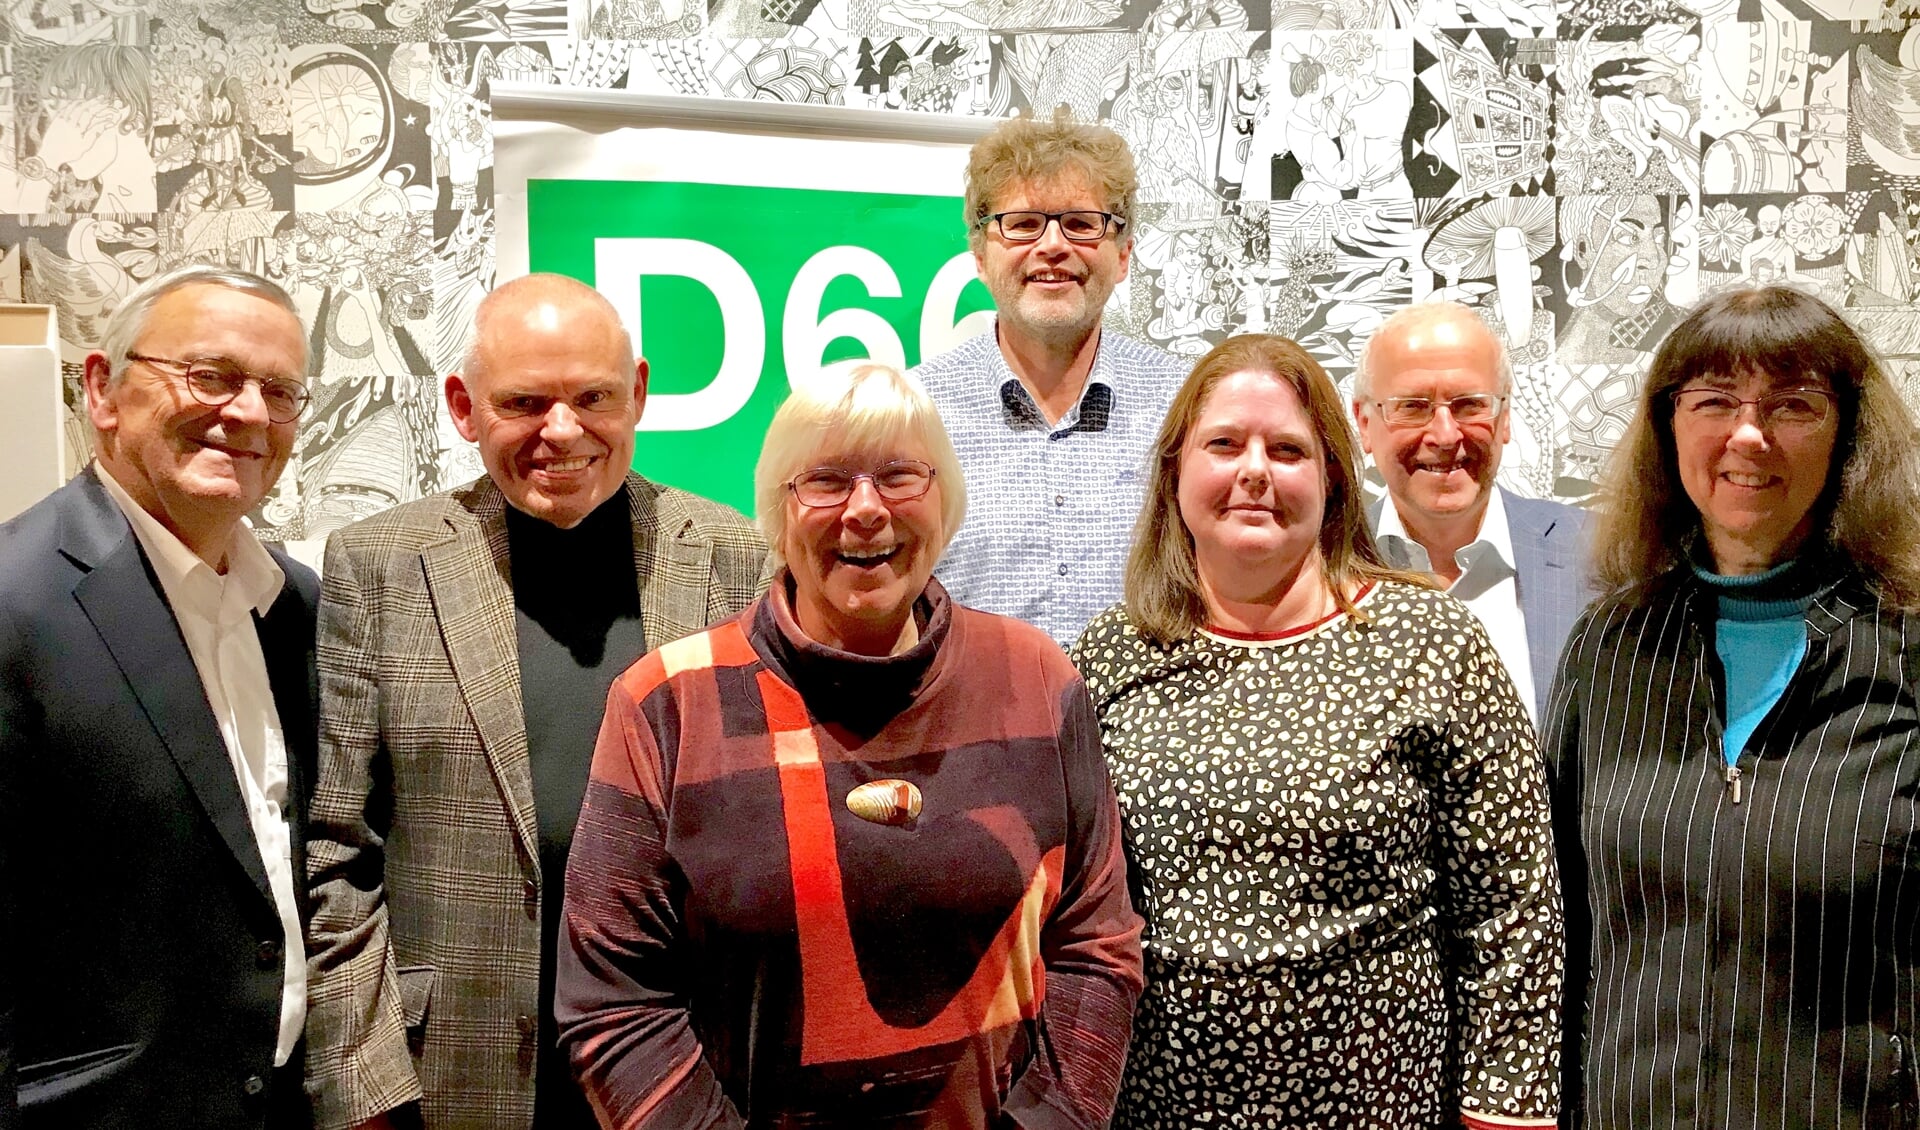 Het nieuwe bestuur van D66 BUCH bestaat uit (v.l.n.r.) Frits Roskam, Fred Lindhout (voorzitter), Anja de Ruiter, Evert Castelein, Marieke Hendriksen, Hans van Halem, Divera Borsboom en Jan Snijder (niet op de foto).